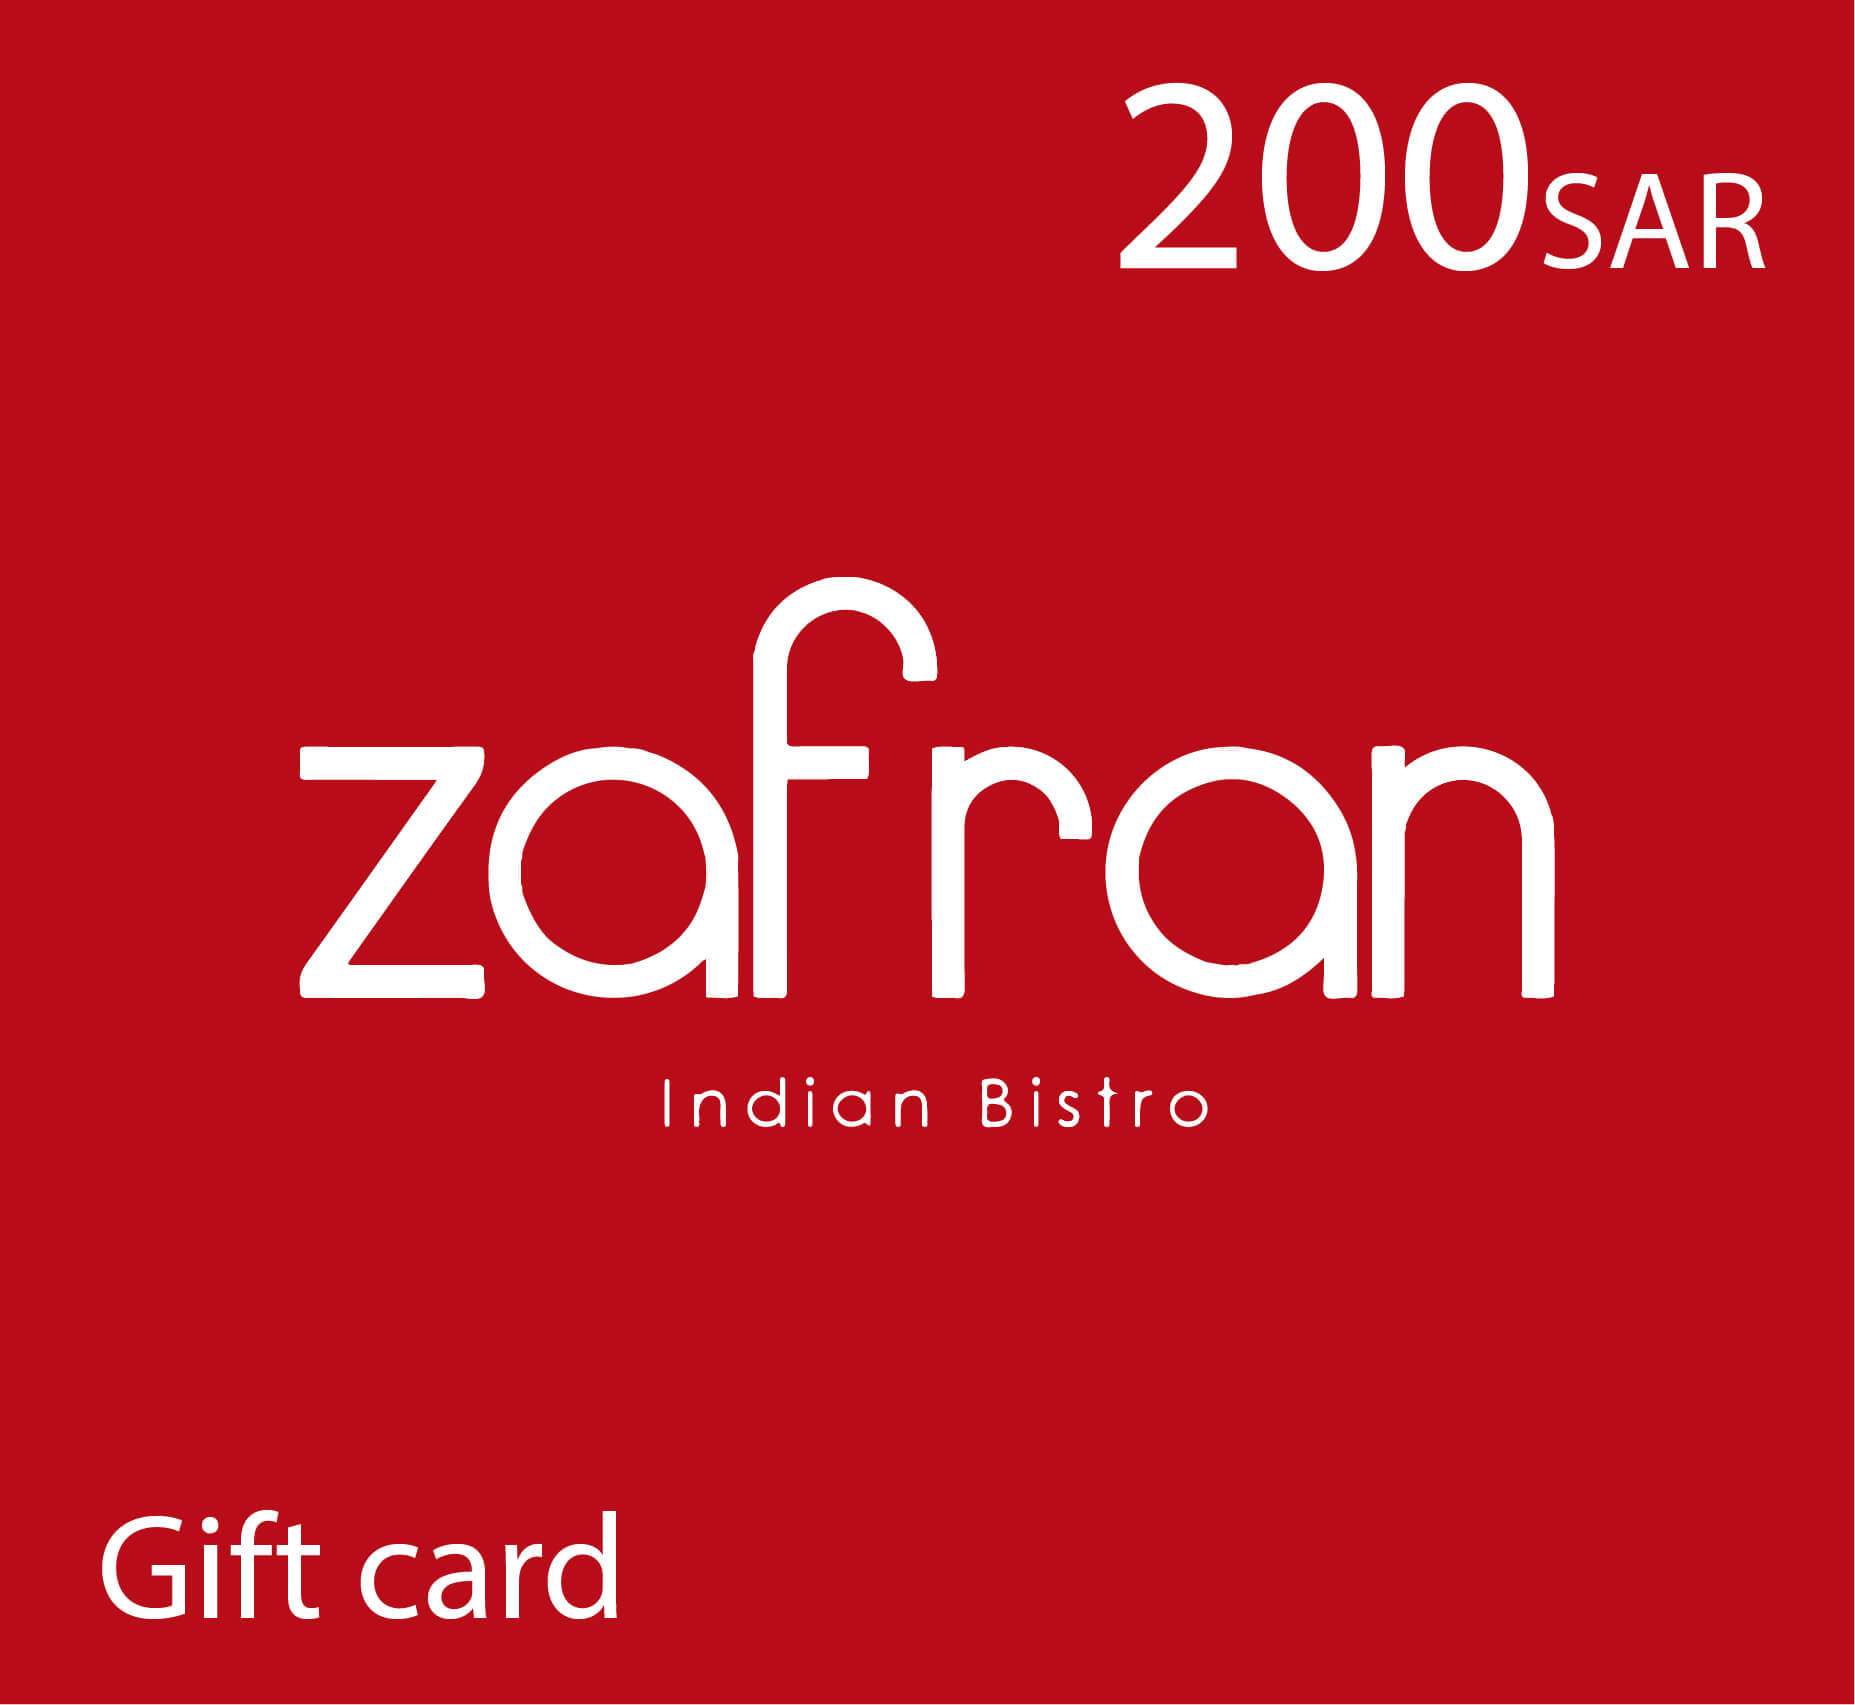 Zafran Gift Card - 200 SAR